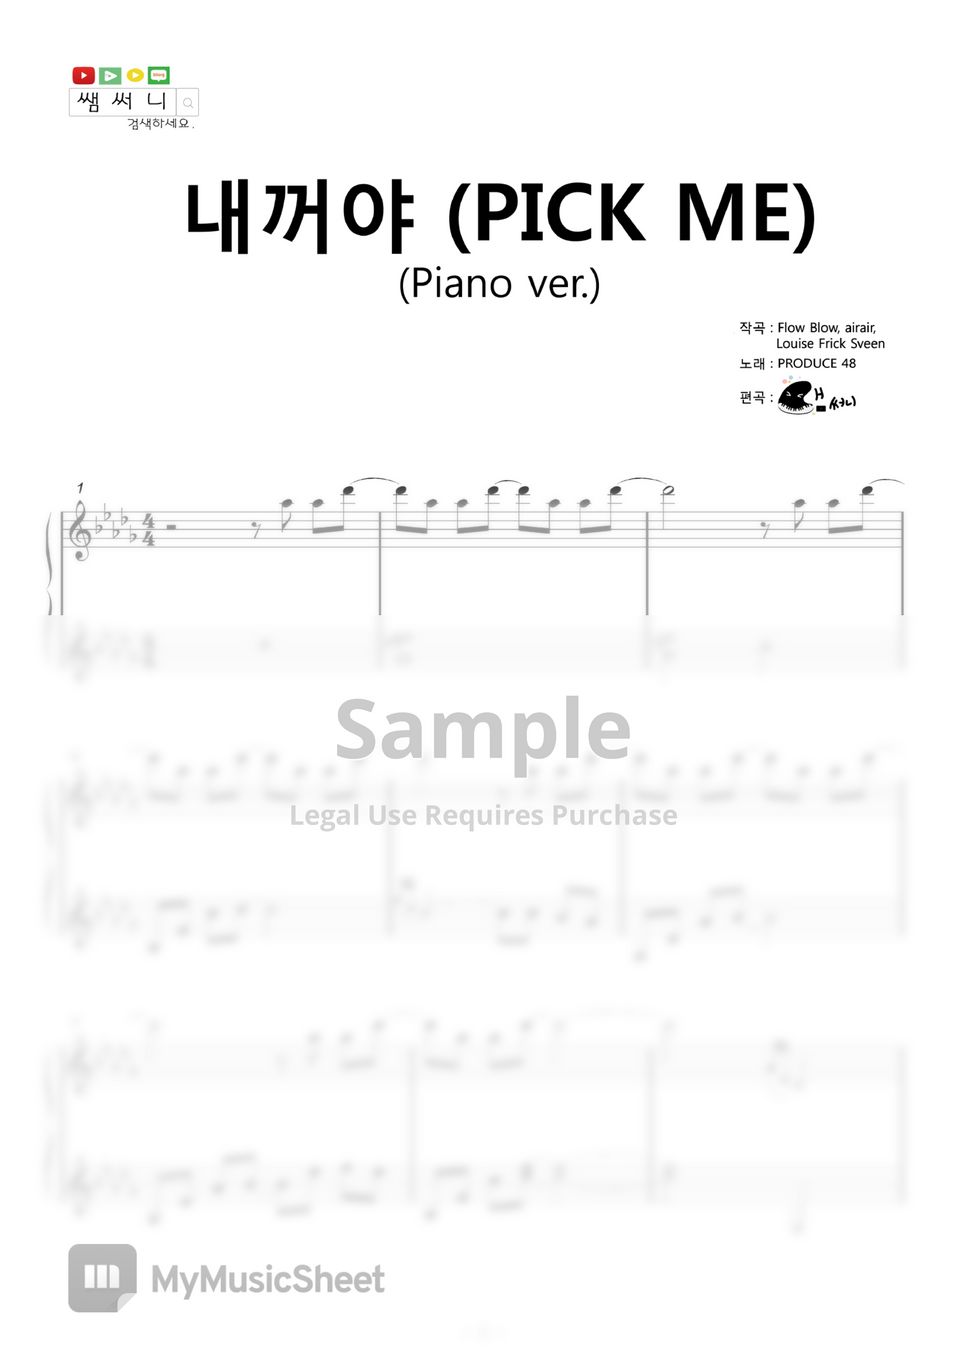 프로듀스 48 (PRODUCE 48) - 내꺼야 (Piano ver.) by 쌤써니